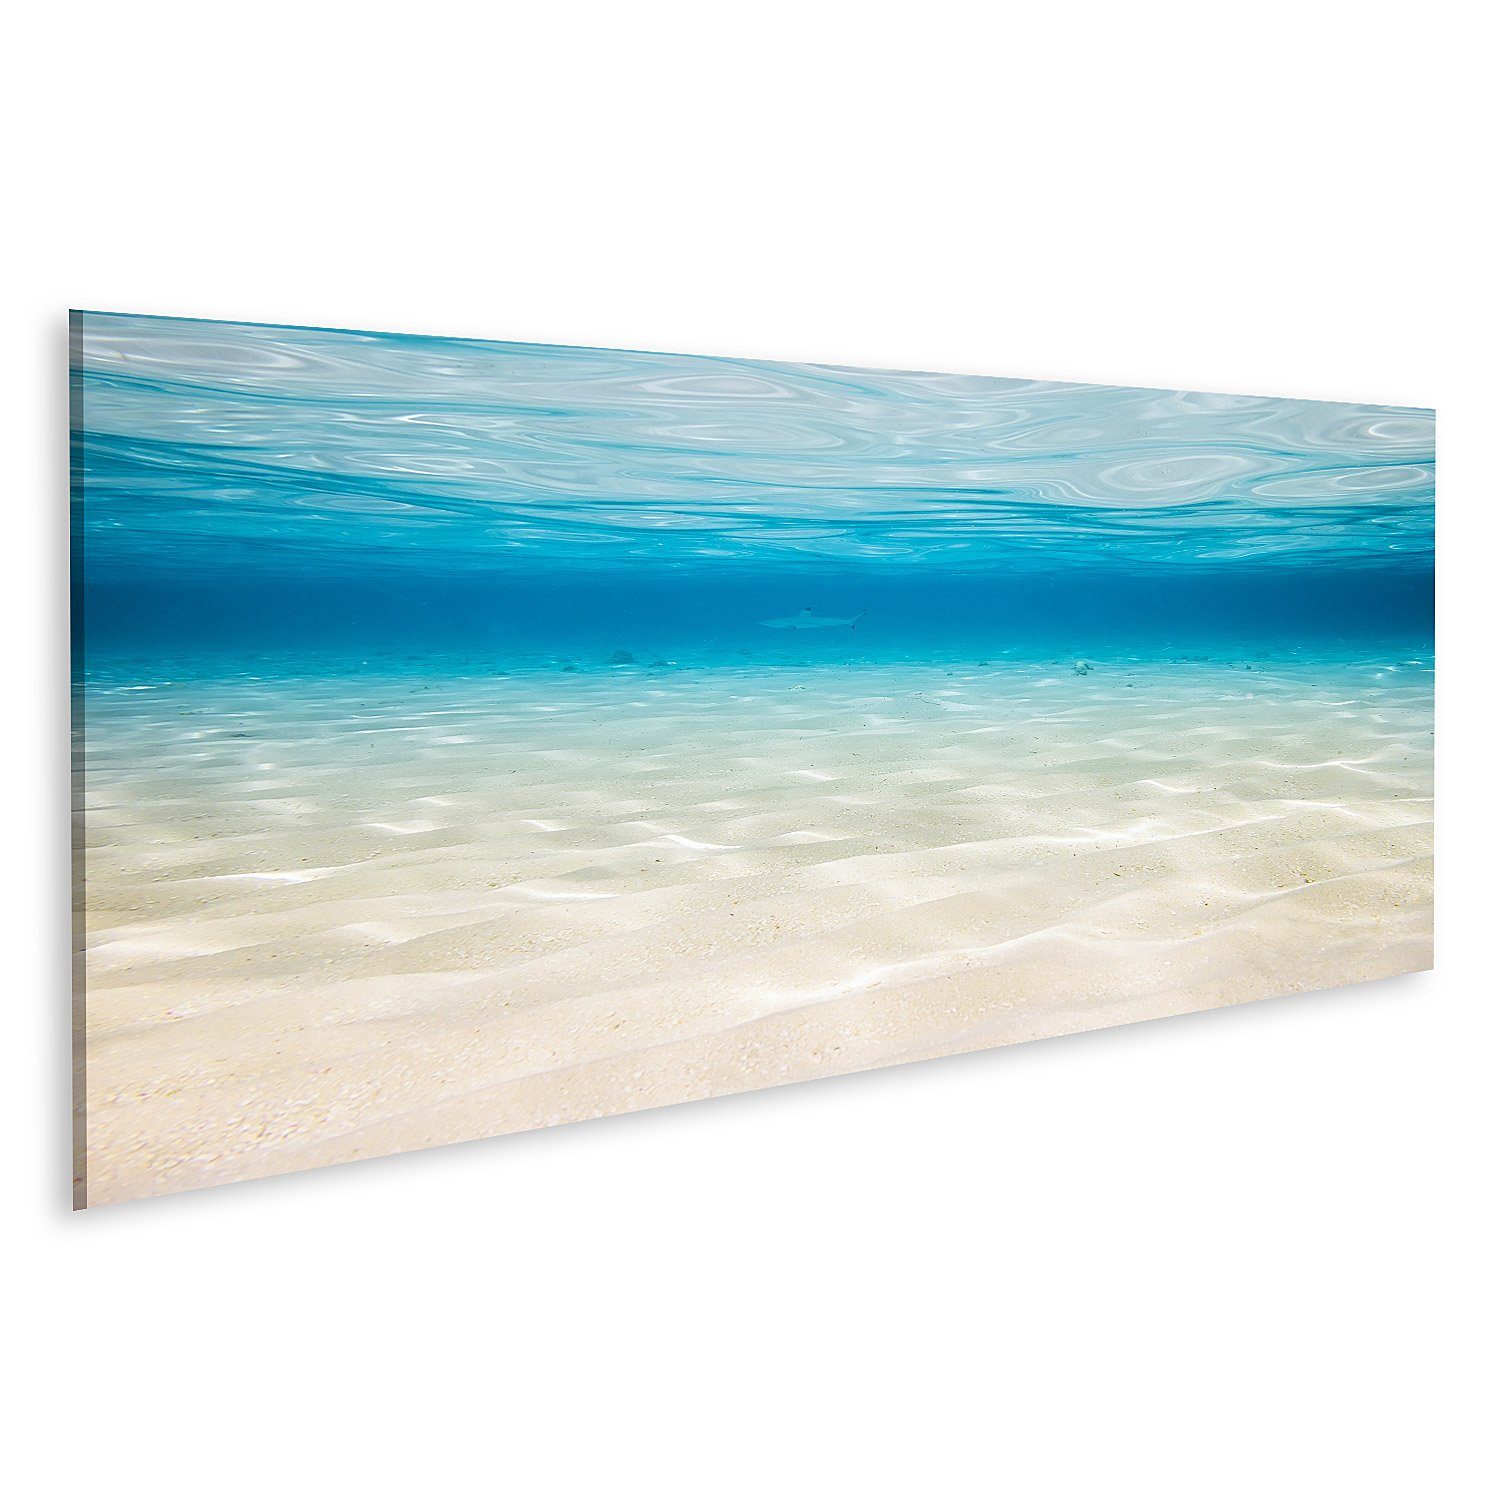 islandburner Leinwandbild Bild auf Leinwand Unterwasserhintergrund mit sandigem Meeresboden Wand